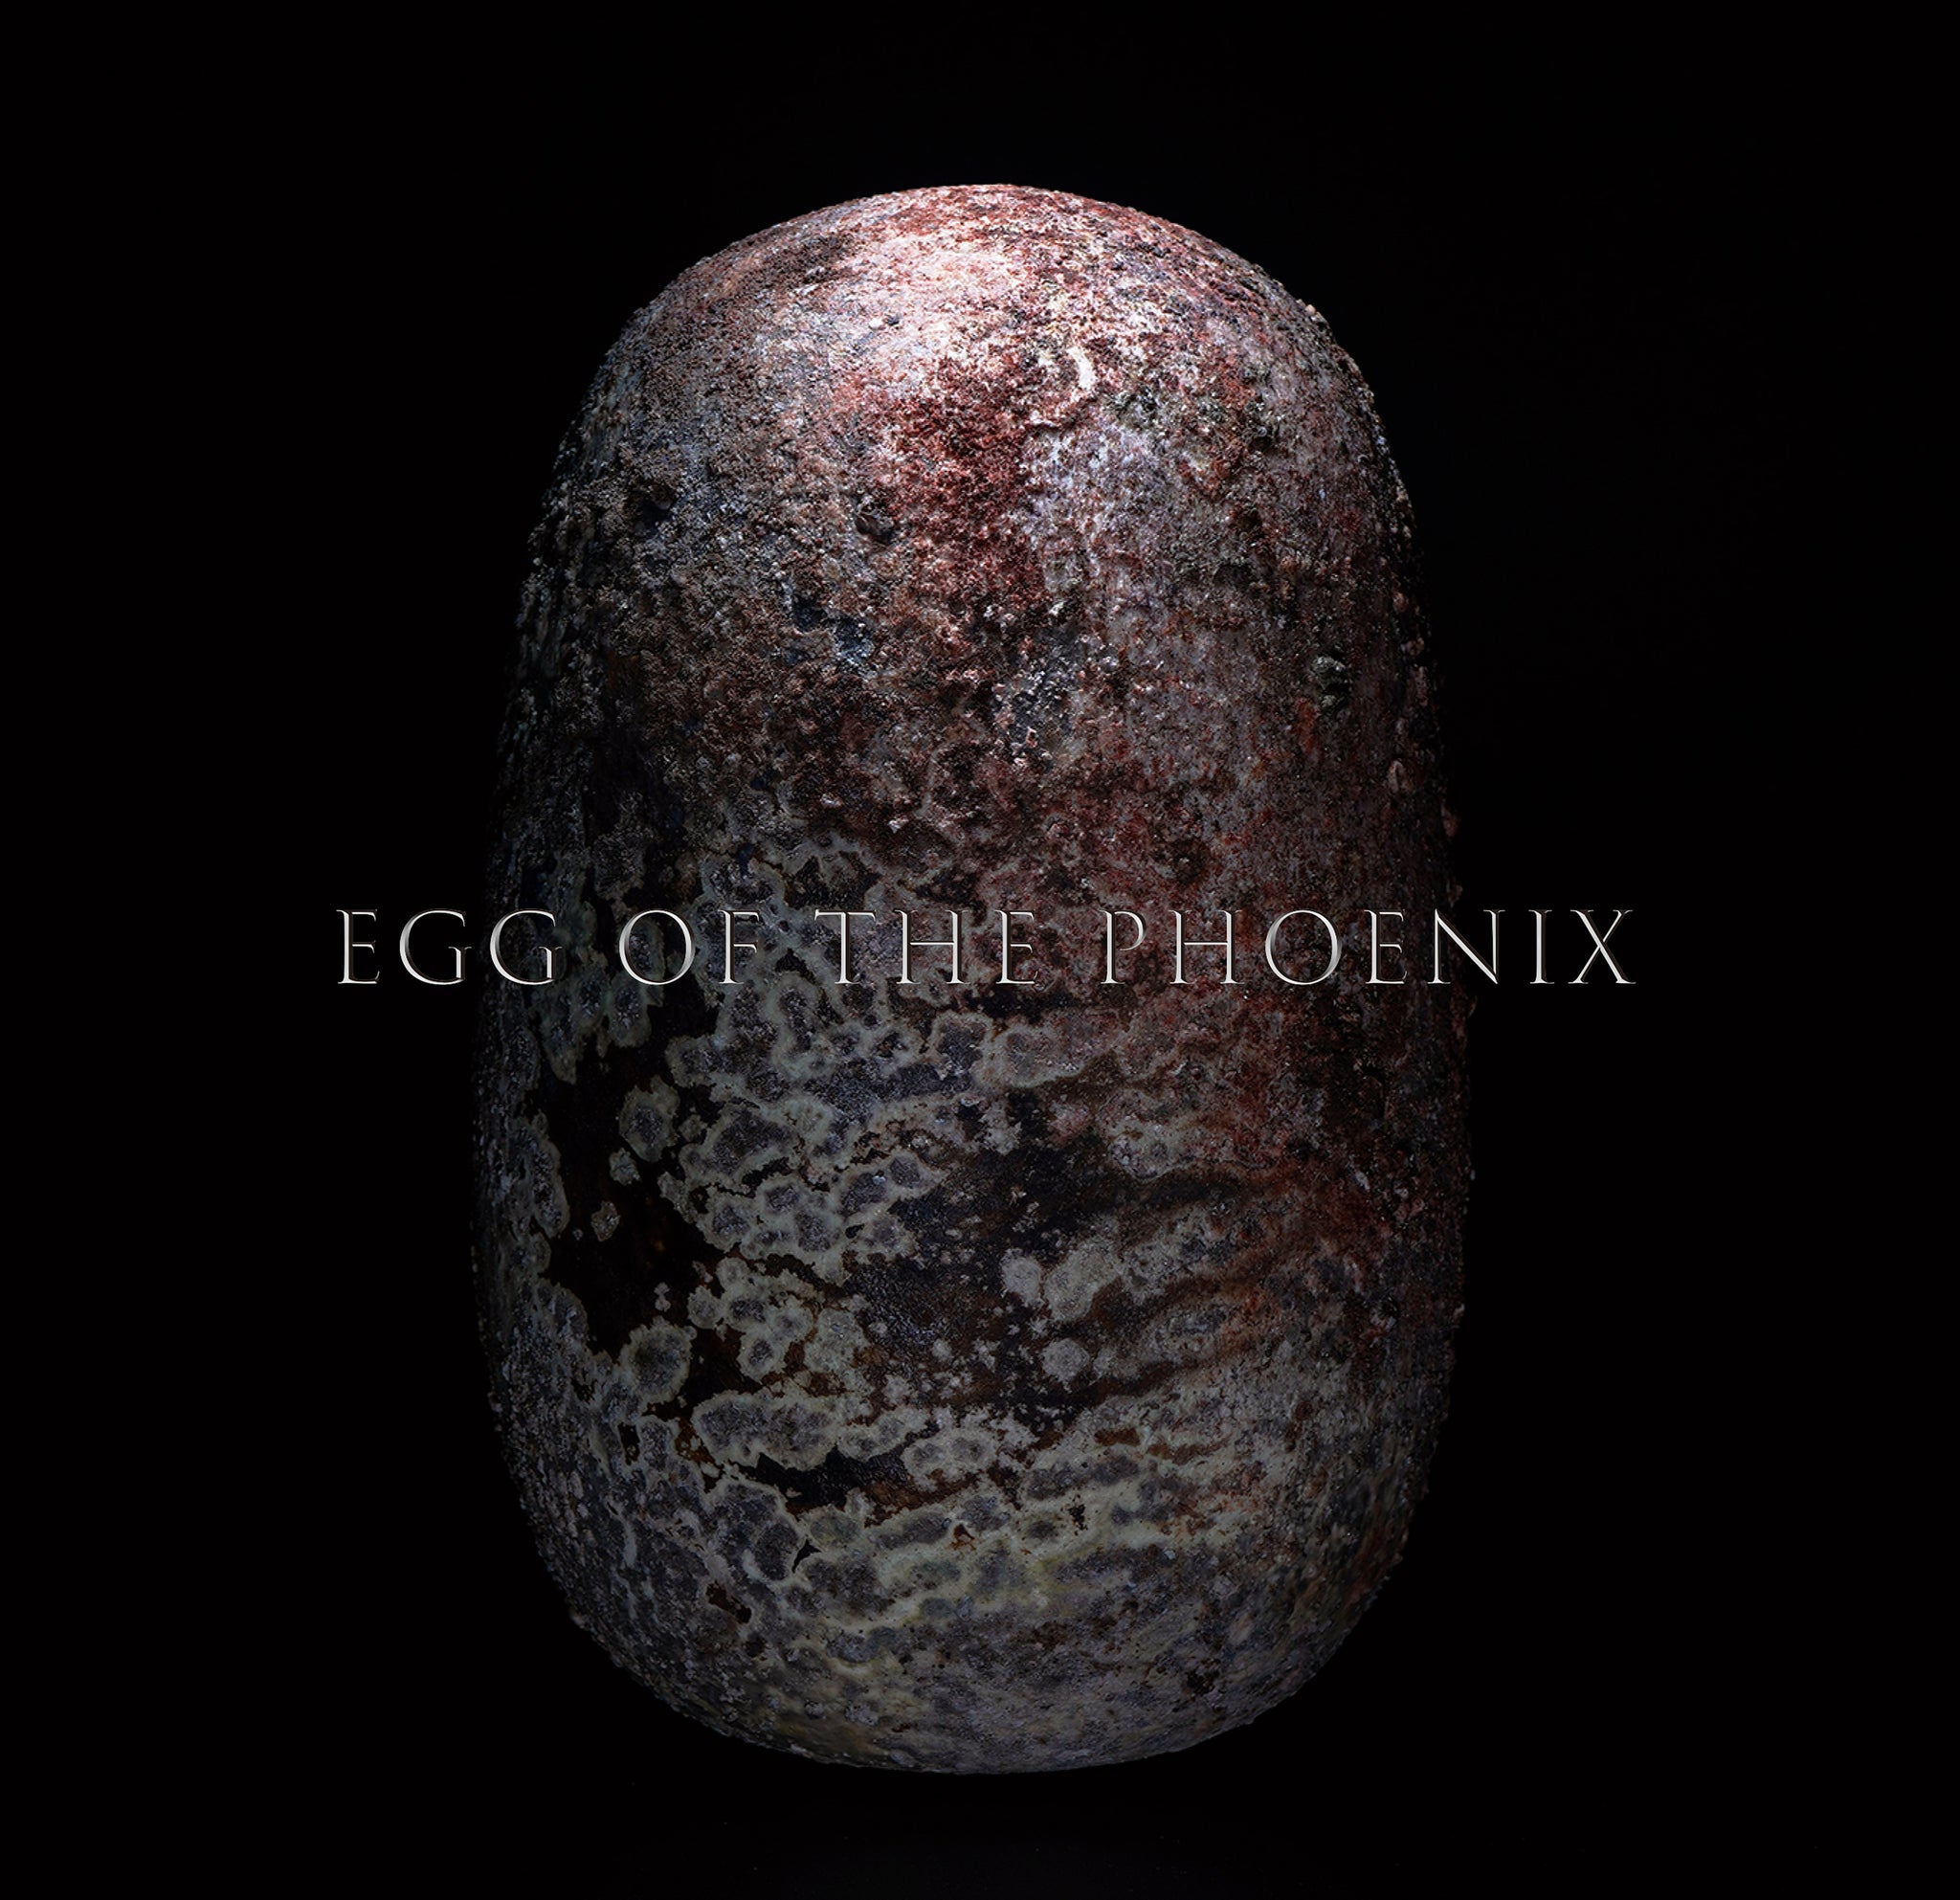 陶芸　松本 治幸 展『 鳳 凰 ノ 卵 』　Solo exhibition by Ceramic artist MATSUMOTO Haruyuki “Egg of the Phoenix”　本日より公開スタートしました